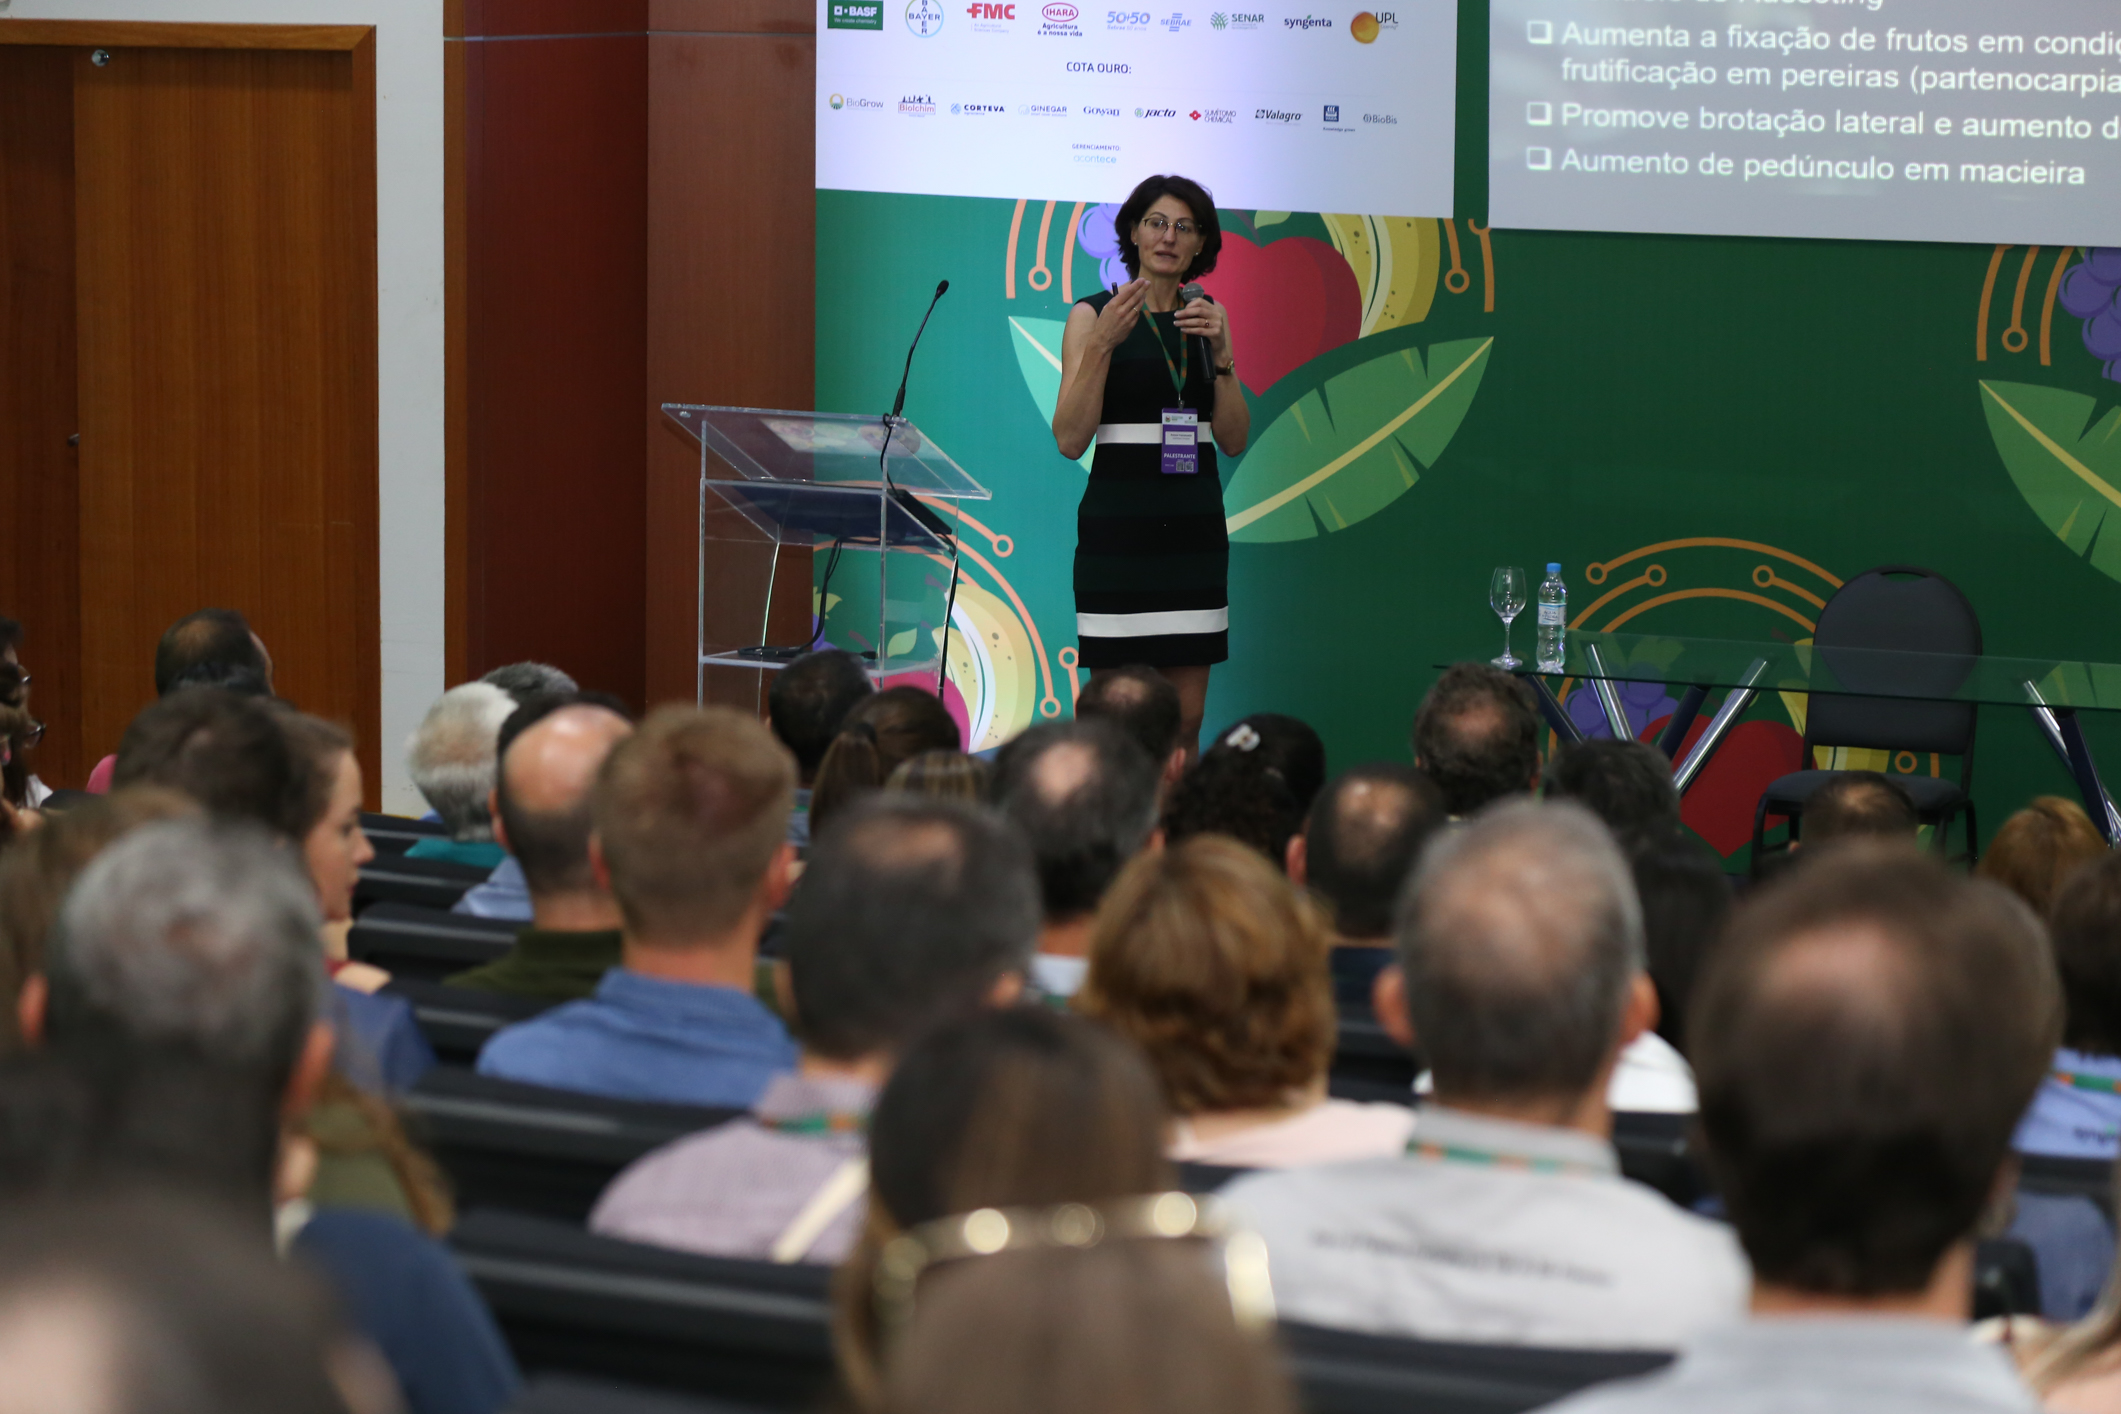 Apresentação durante o XXVII Congresso Brasileiro de Fruticultura, em Florianópolis, em 2022: principal evento do setor retoma bianualidade a partir de 2025